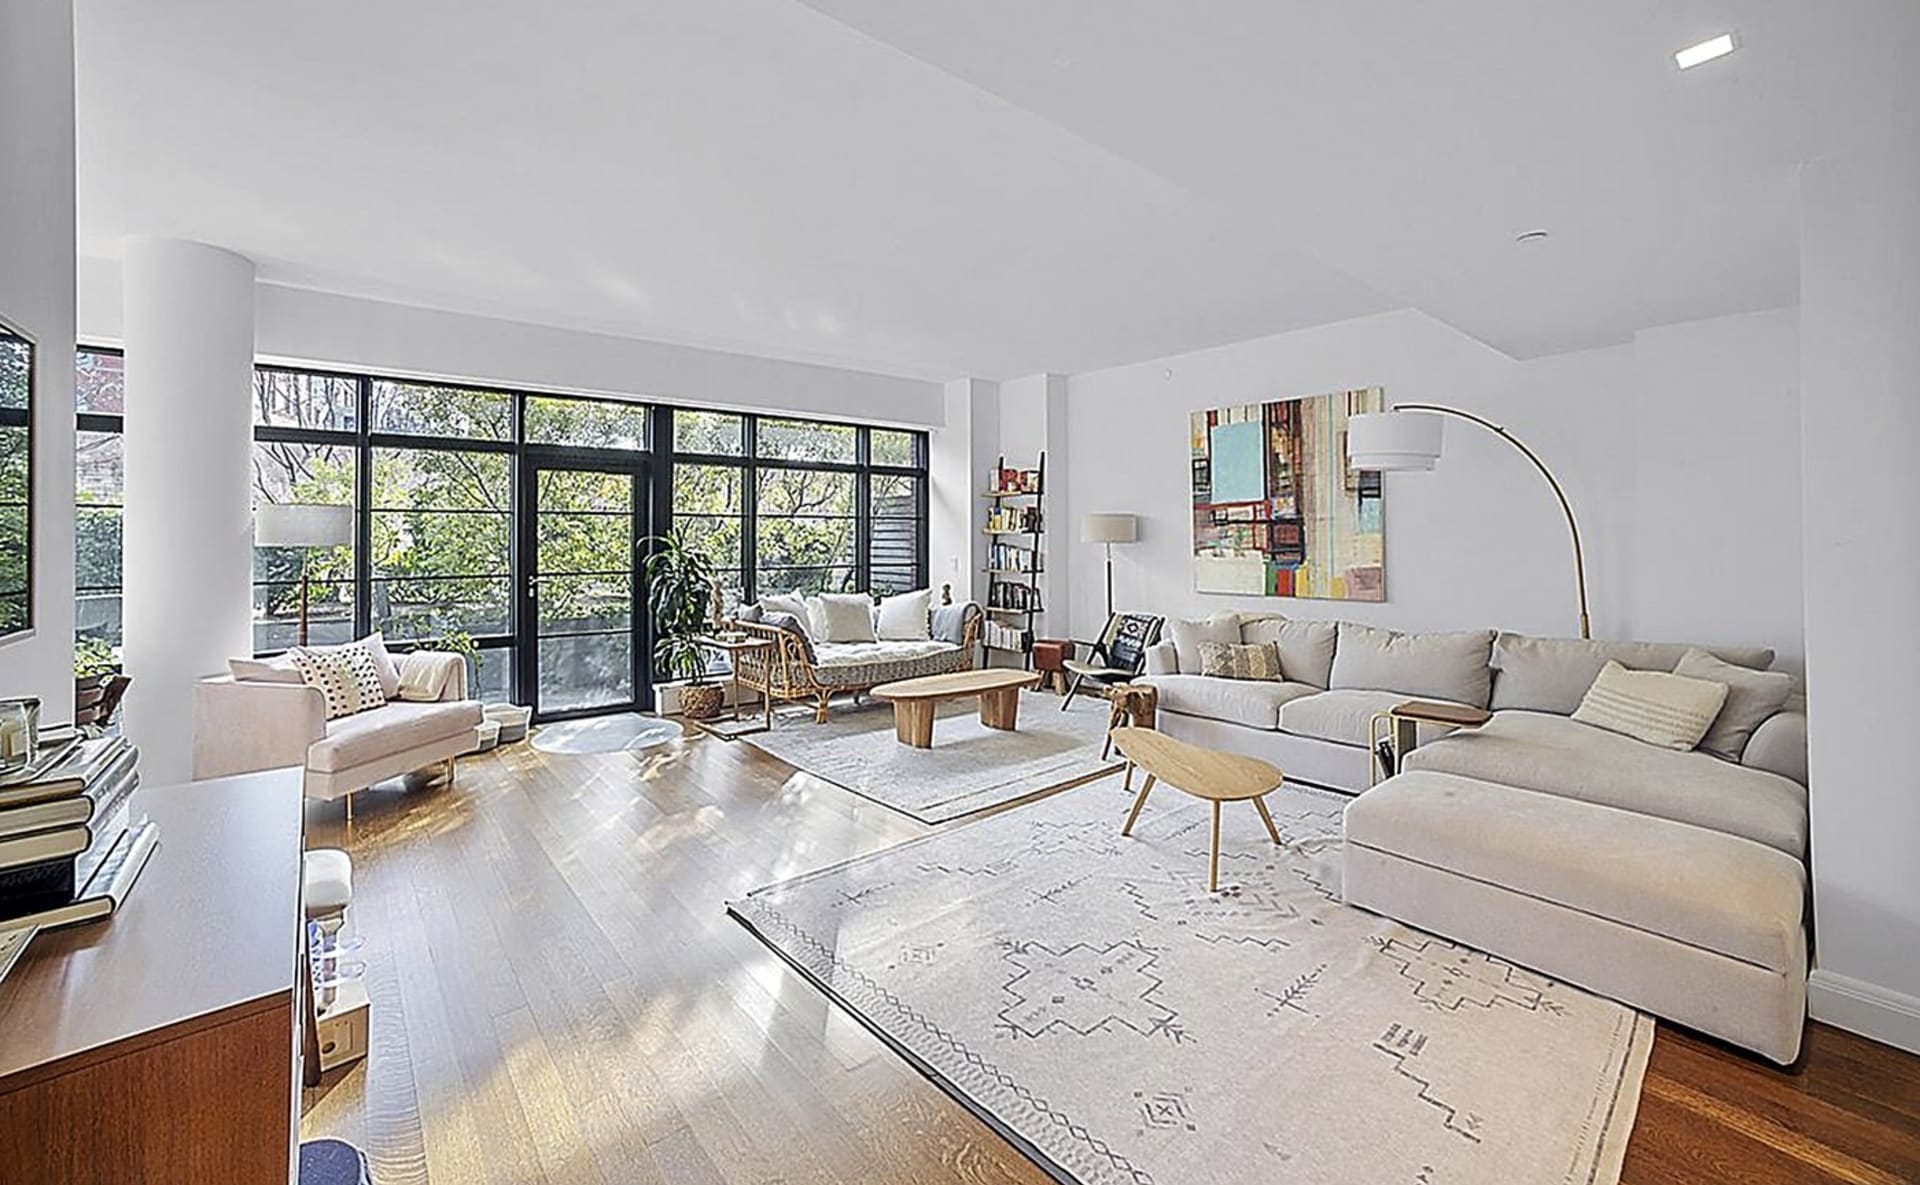  Irina Shayk pronajímá svůj nádherný byt v New Yorku: Rozlehlý obývací pokoj nabízí spoustu prostoru pro odpočinek i zábavu. 